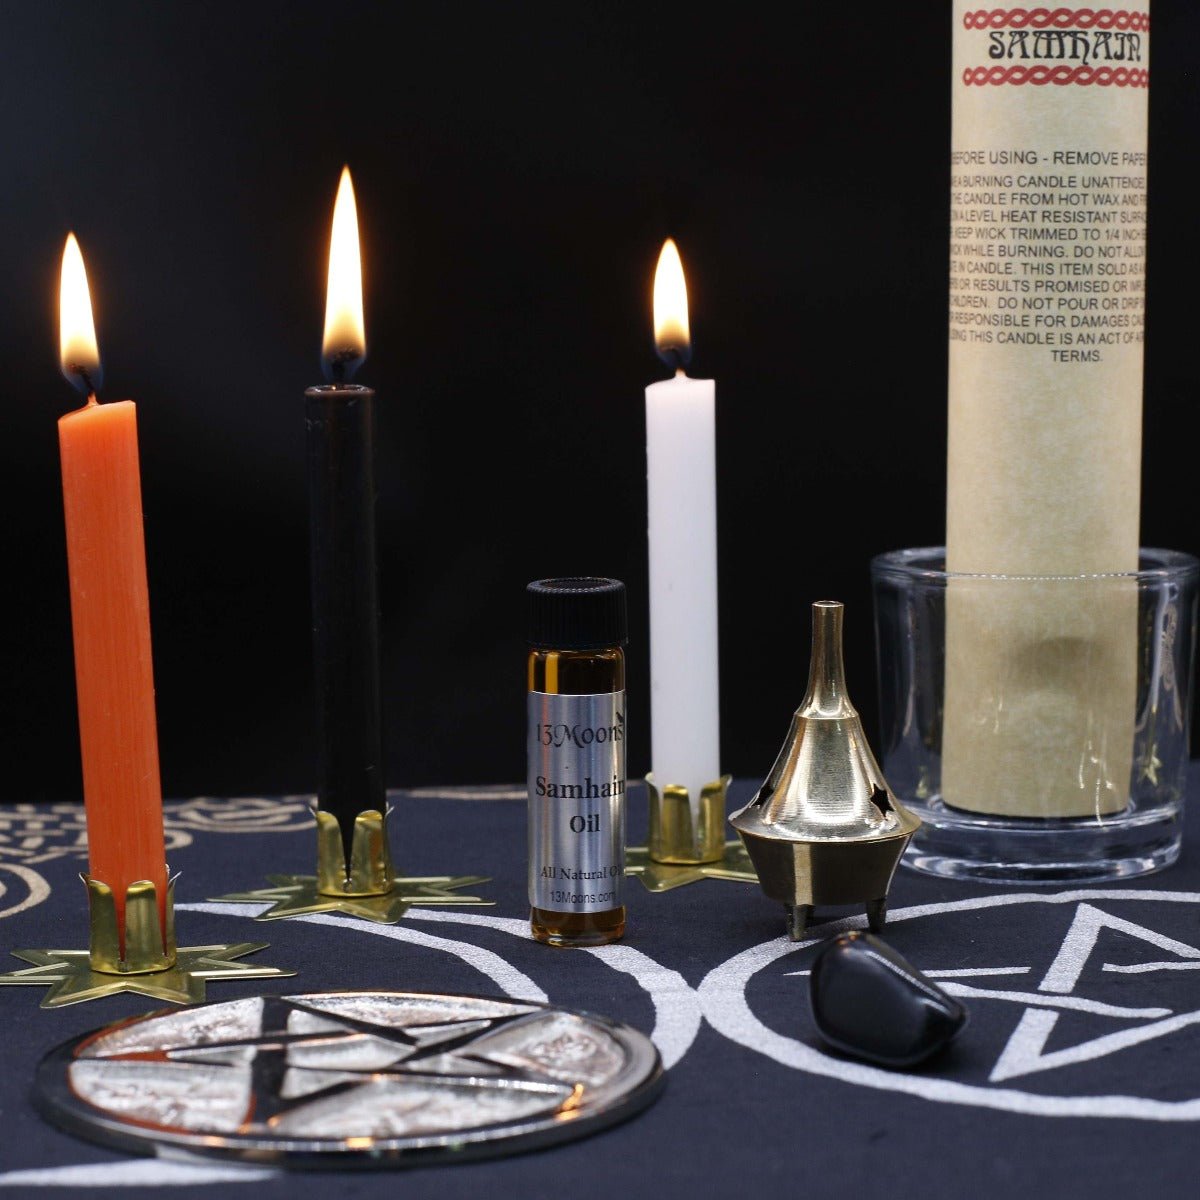 Samhain Altar Kit - 13 Moons